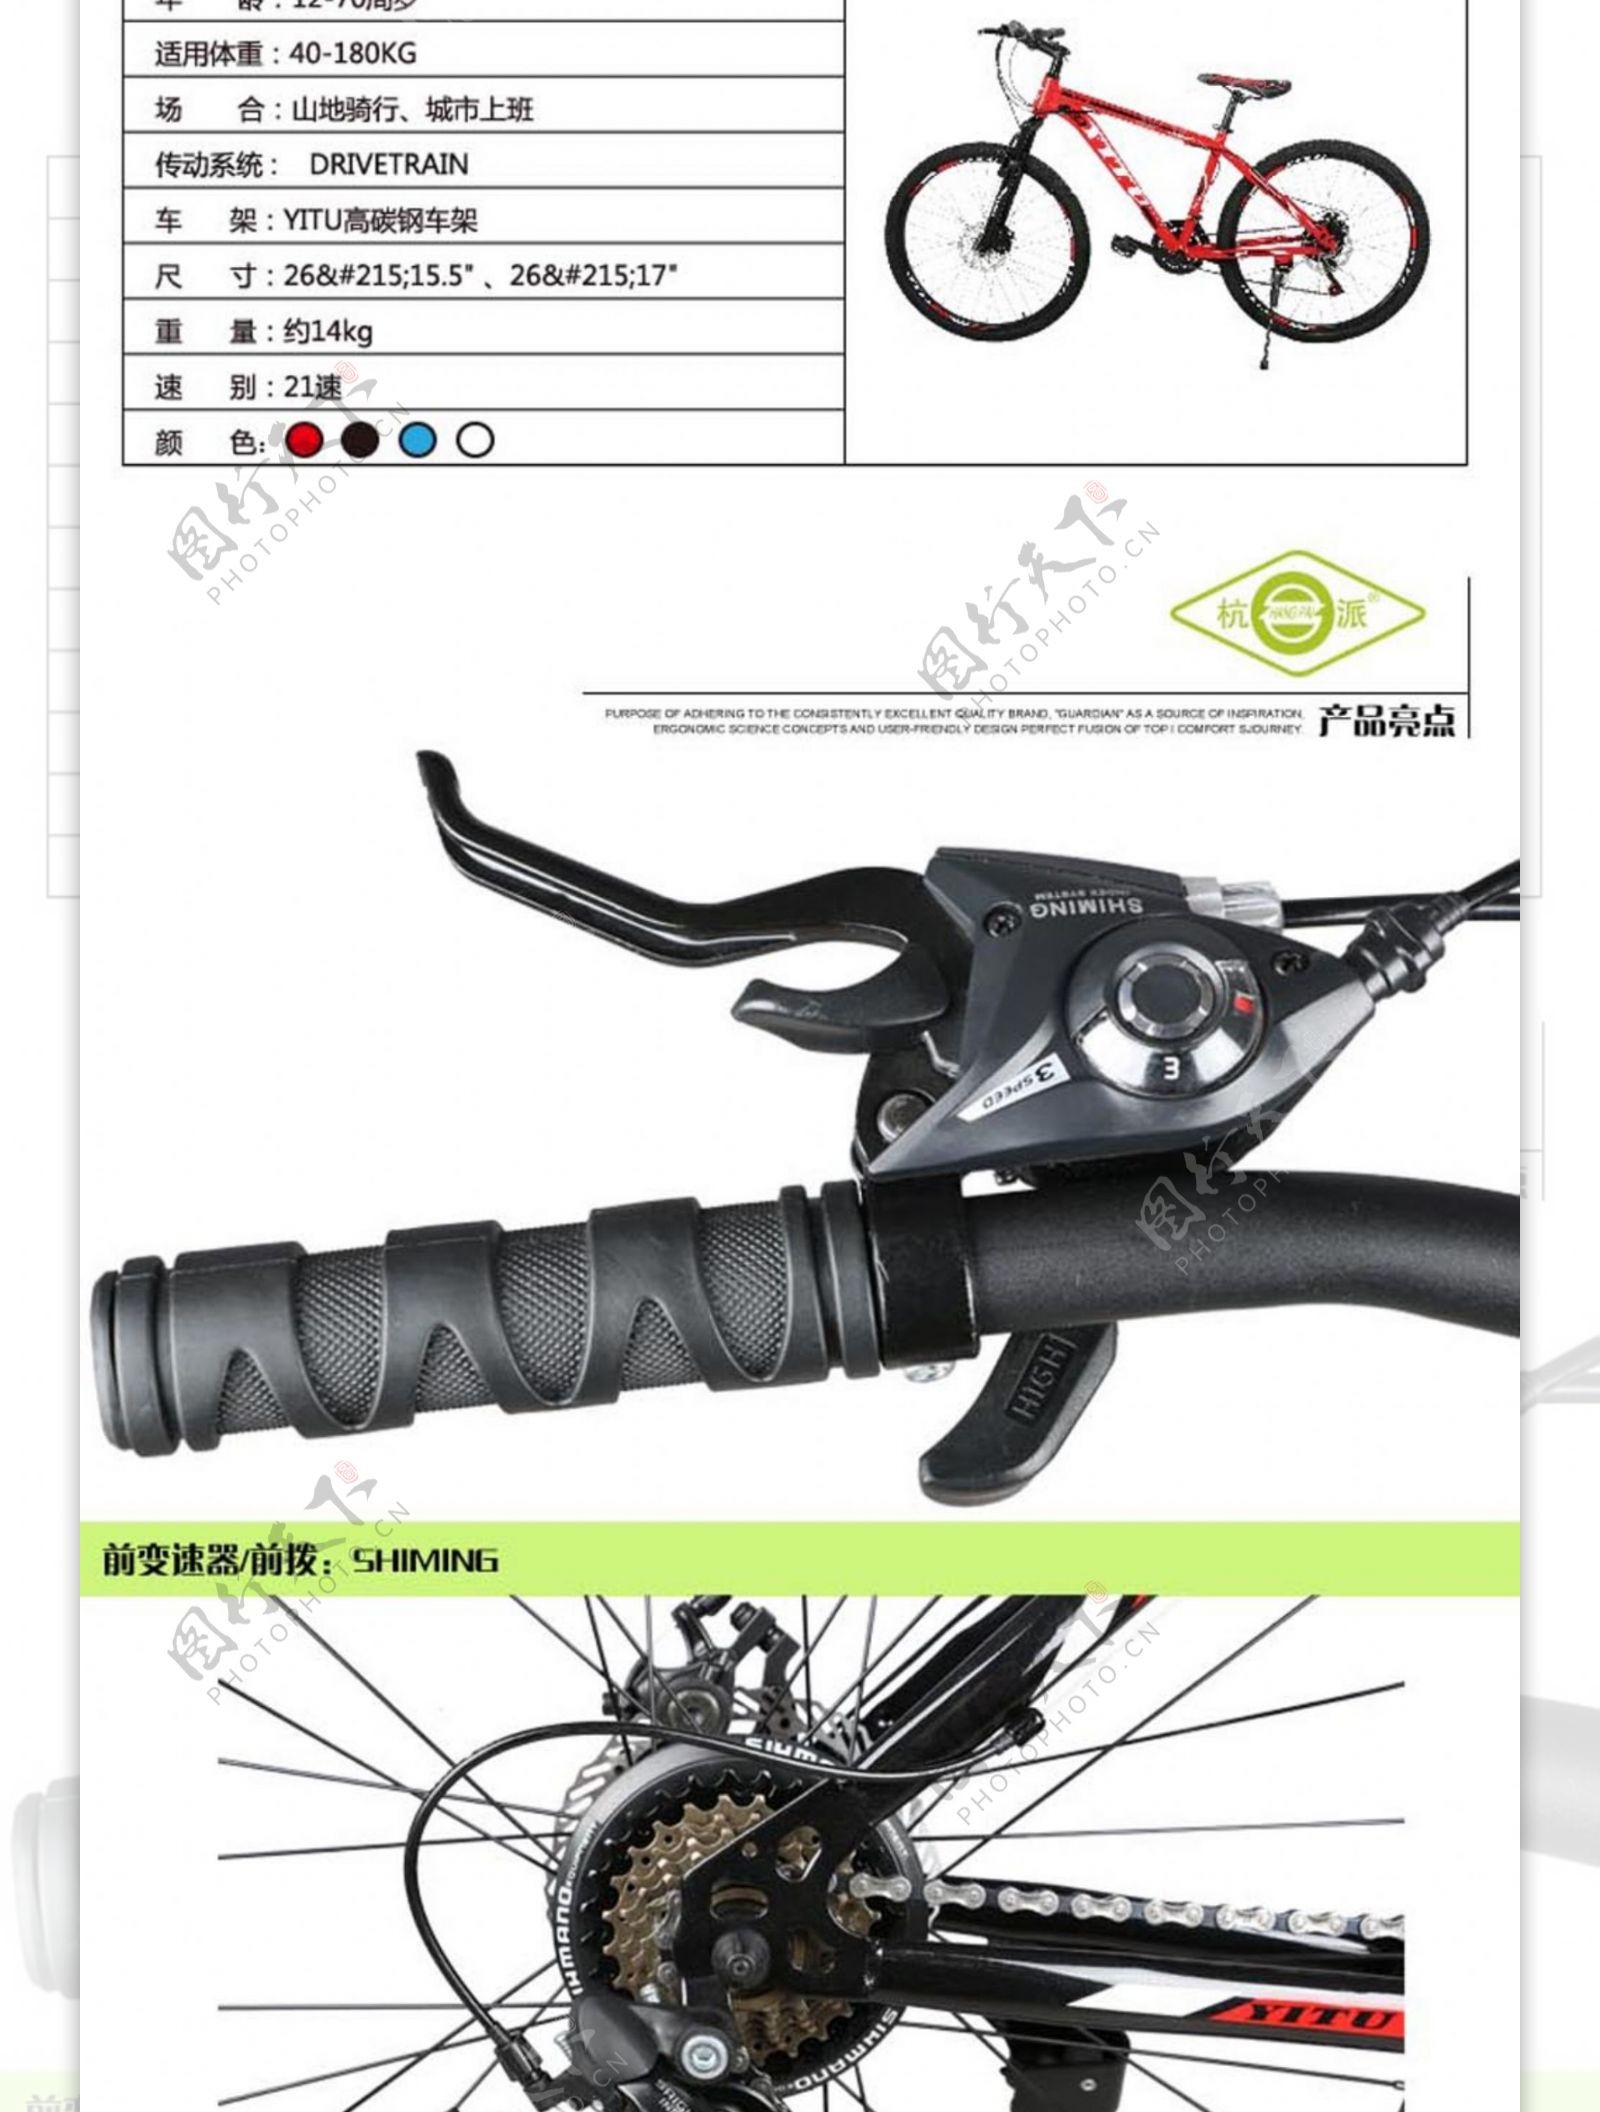 自行车详情页图片